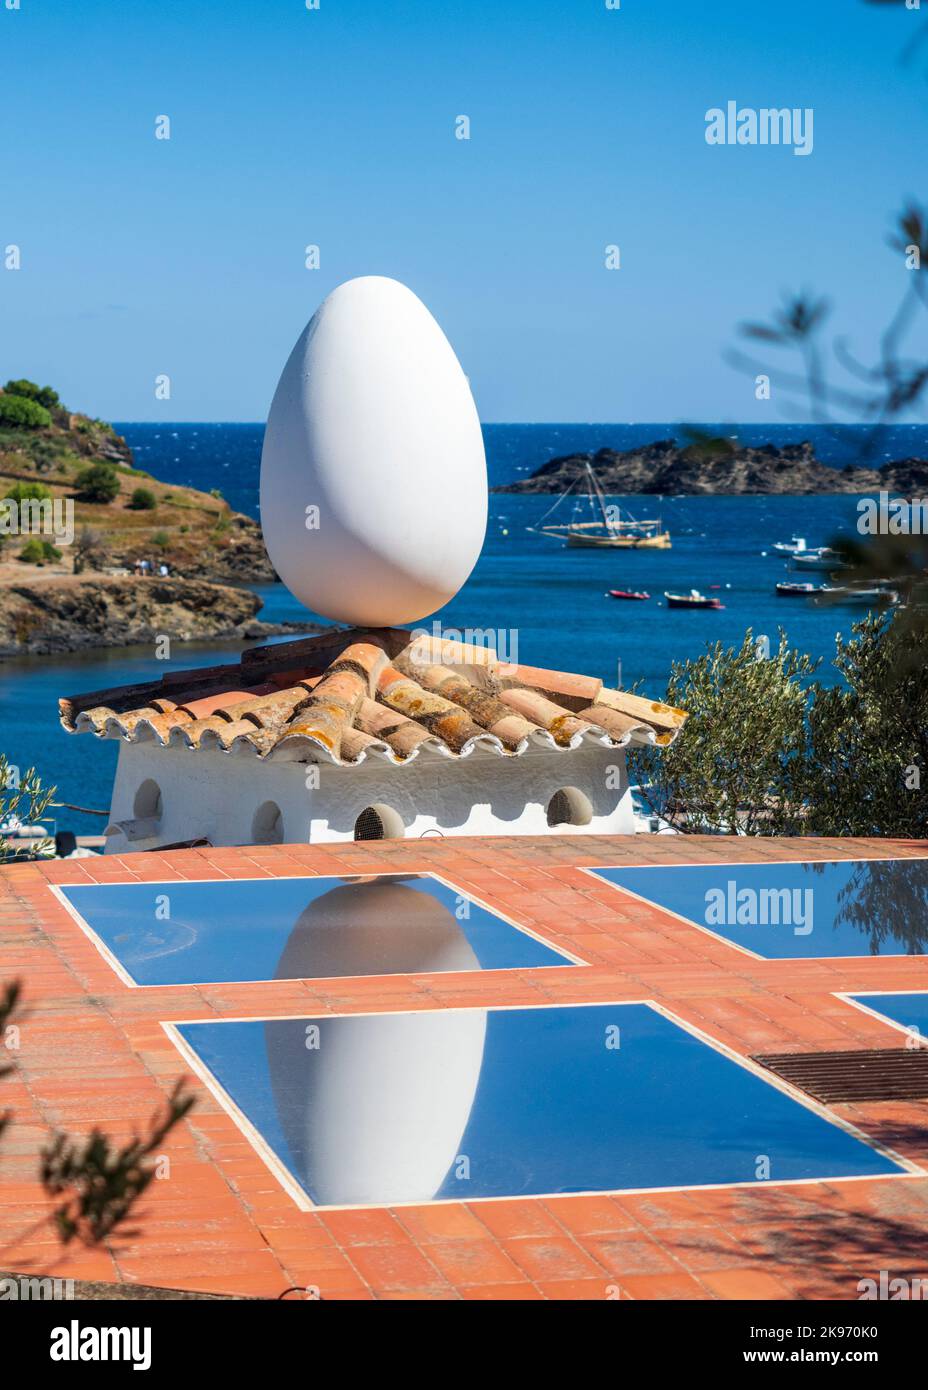 Vista esterna del famoso uovo di Dalí situato nella casa che Salvador Dalí ha costruito sulla spiaggia di Cadaqués. Foto Stock